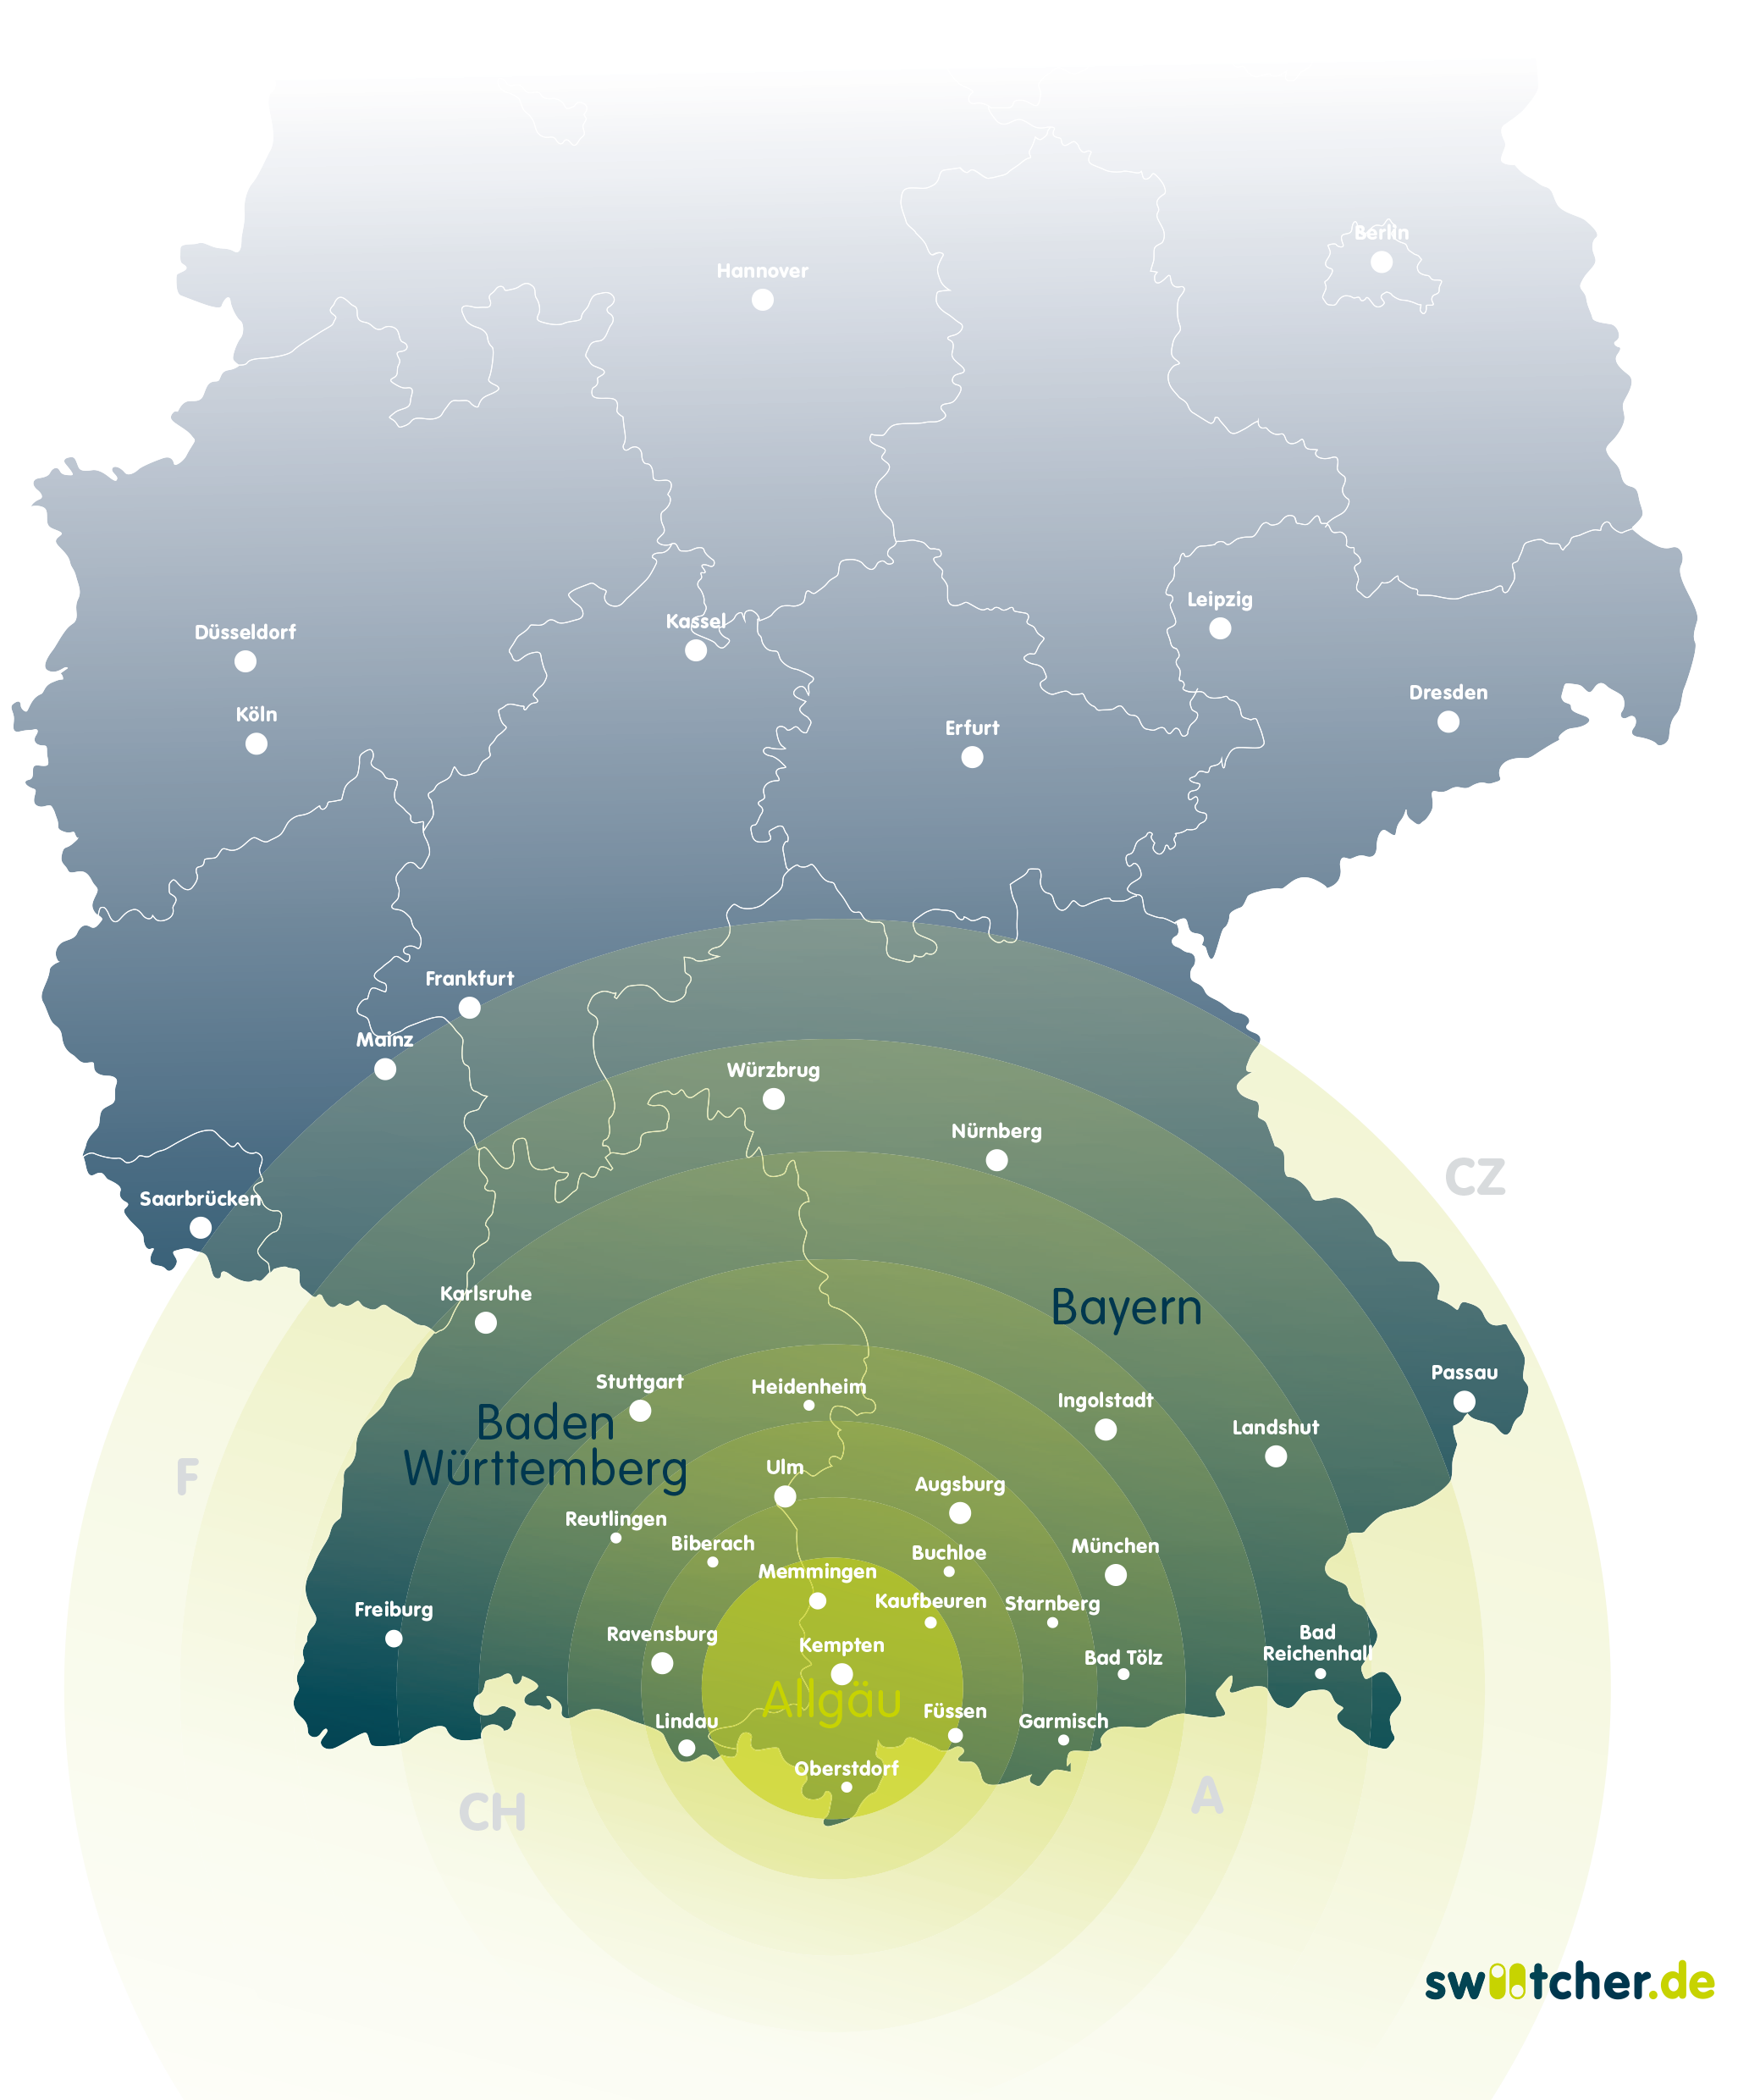 Grafische Kartendarstellung von Deutschland. Mit grünen Kreisen wird vom Allgäu aus ein Wirkungskreis dargestellt, der sich über Kaufbeuren, Augsburg, Stuttgart, über ganz Bayern und Baden-Württemberg erstreckt